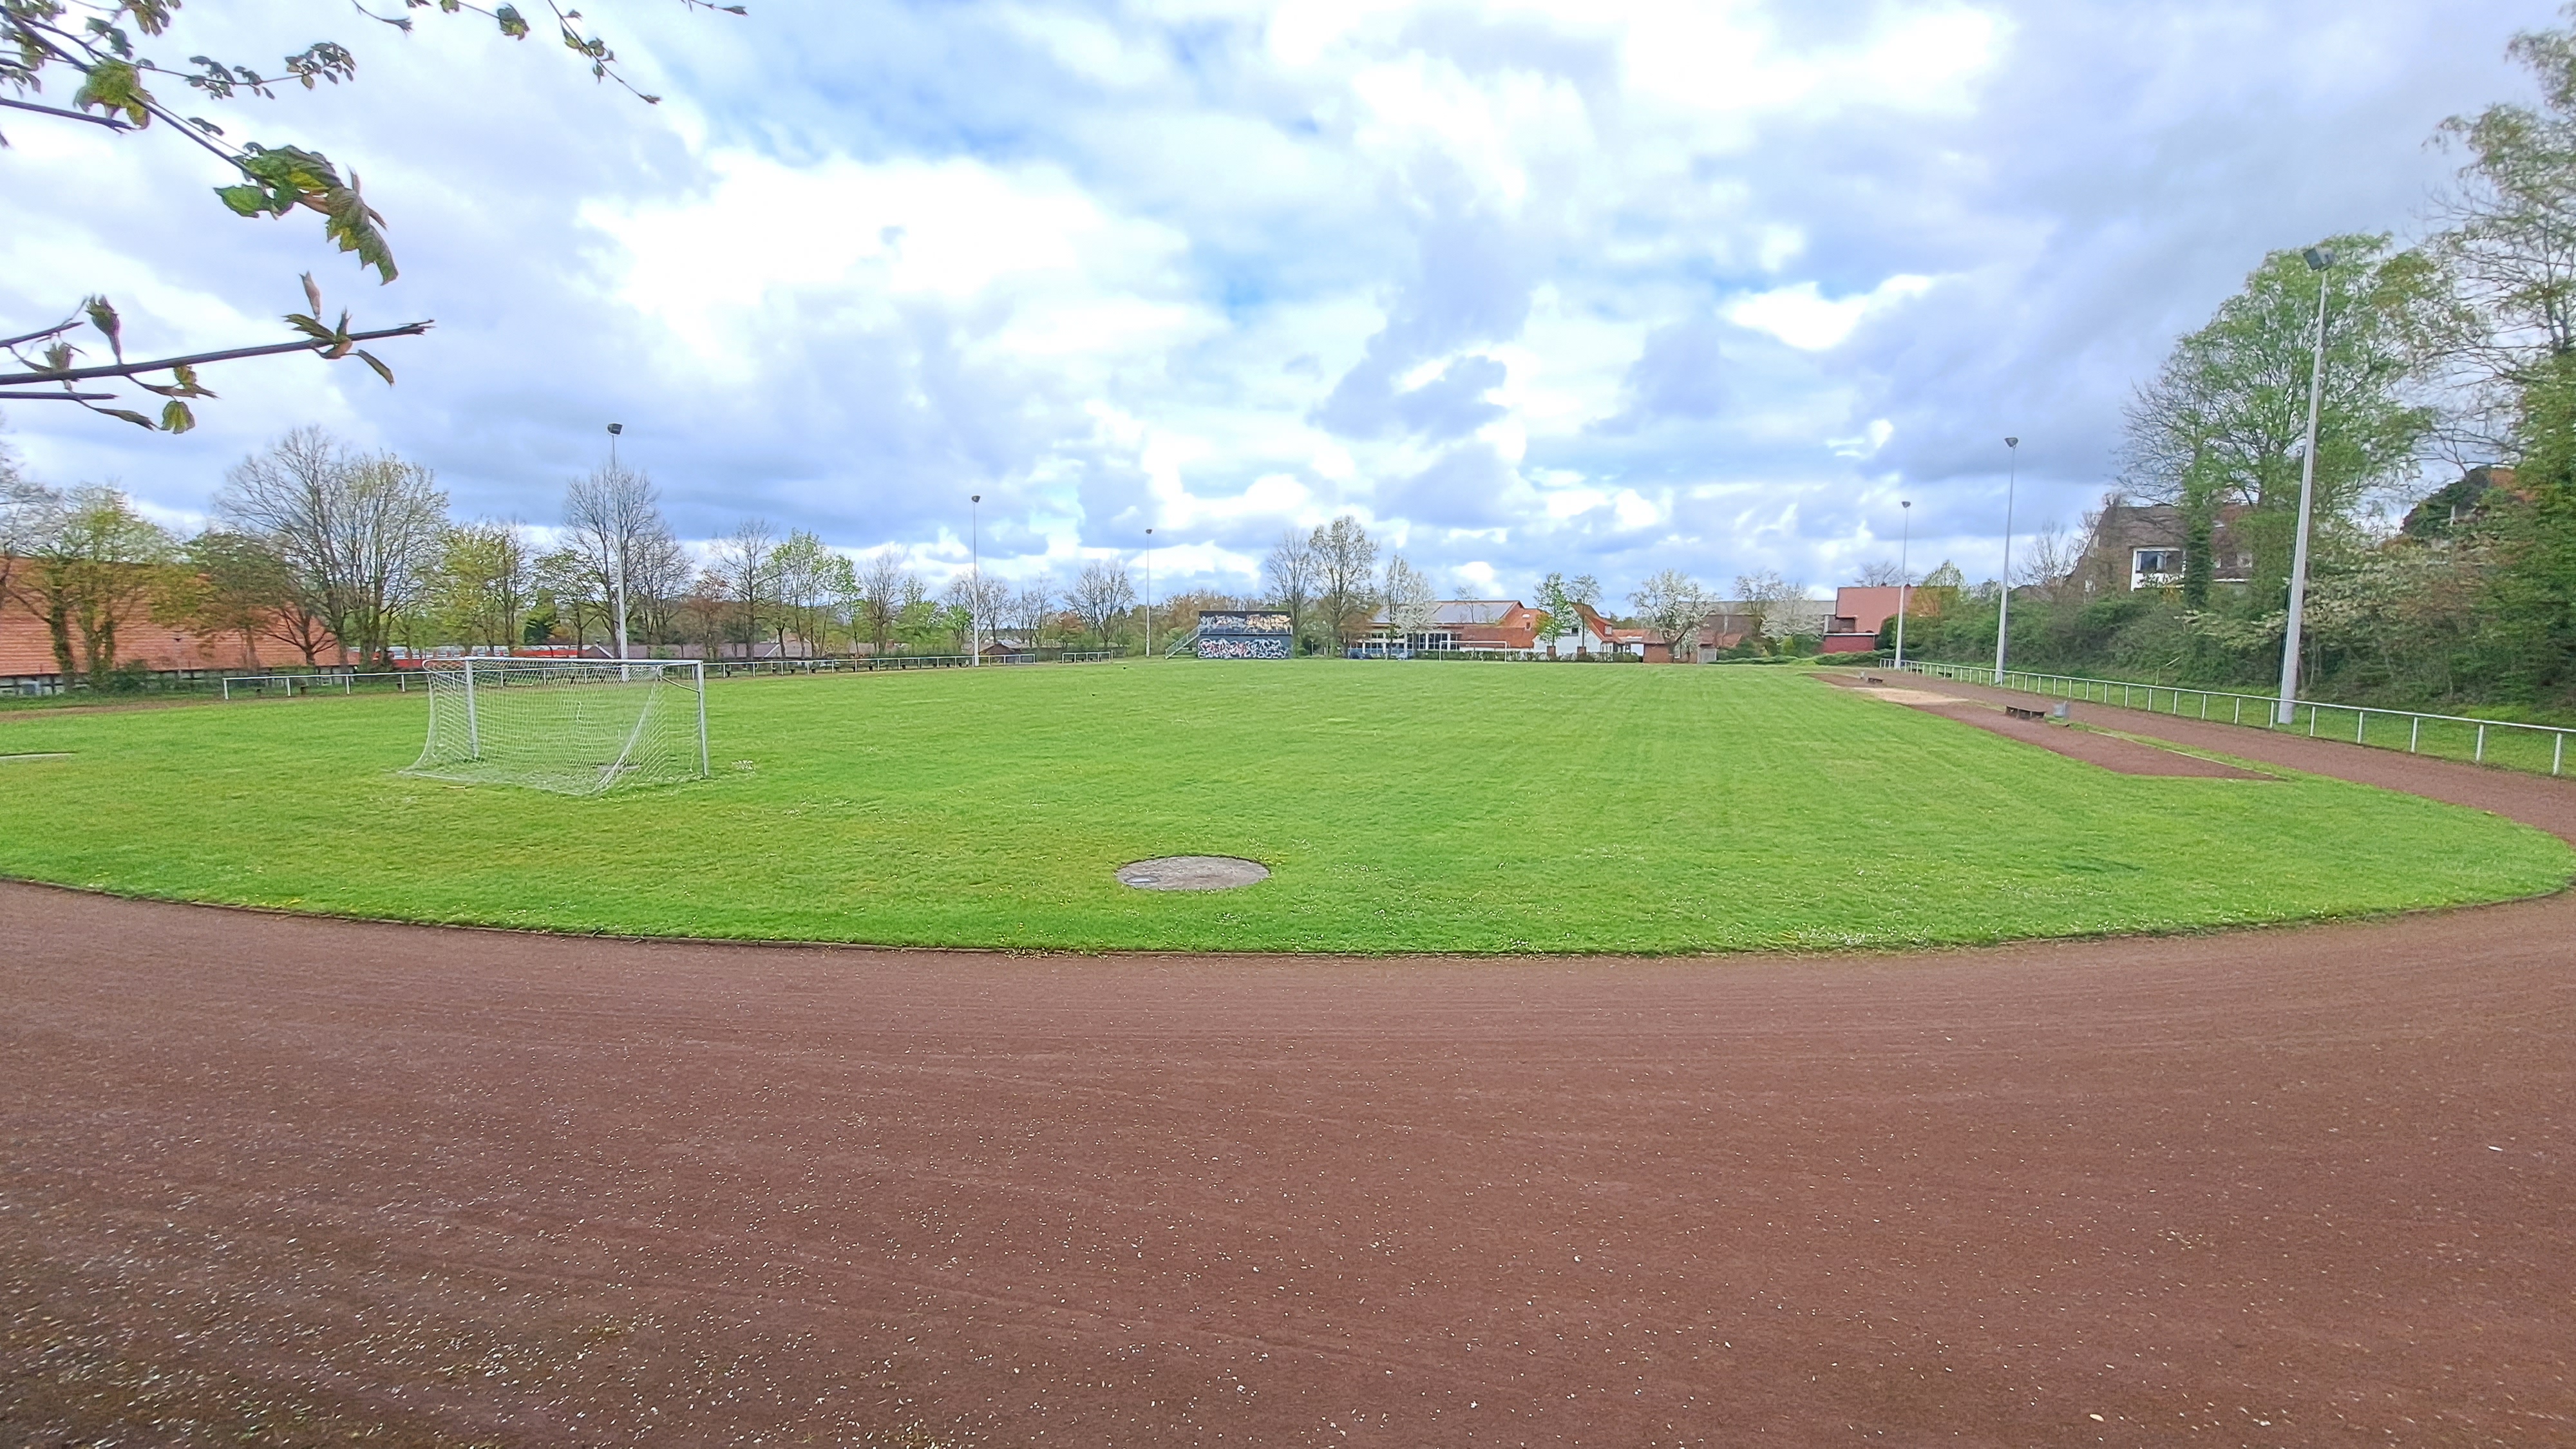 Man sieht einen Sportplatz mit einer Tartanbahn und einem Fußballfeld